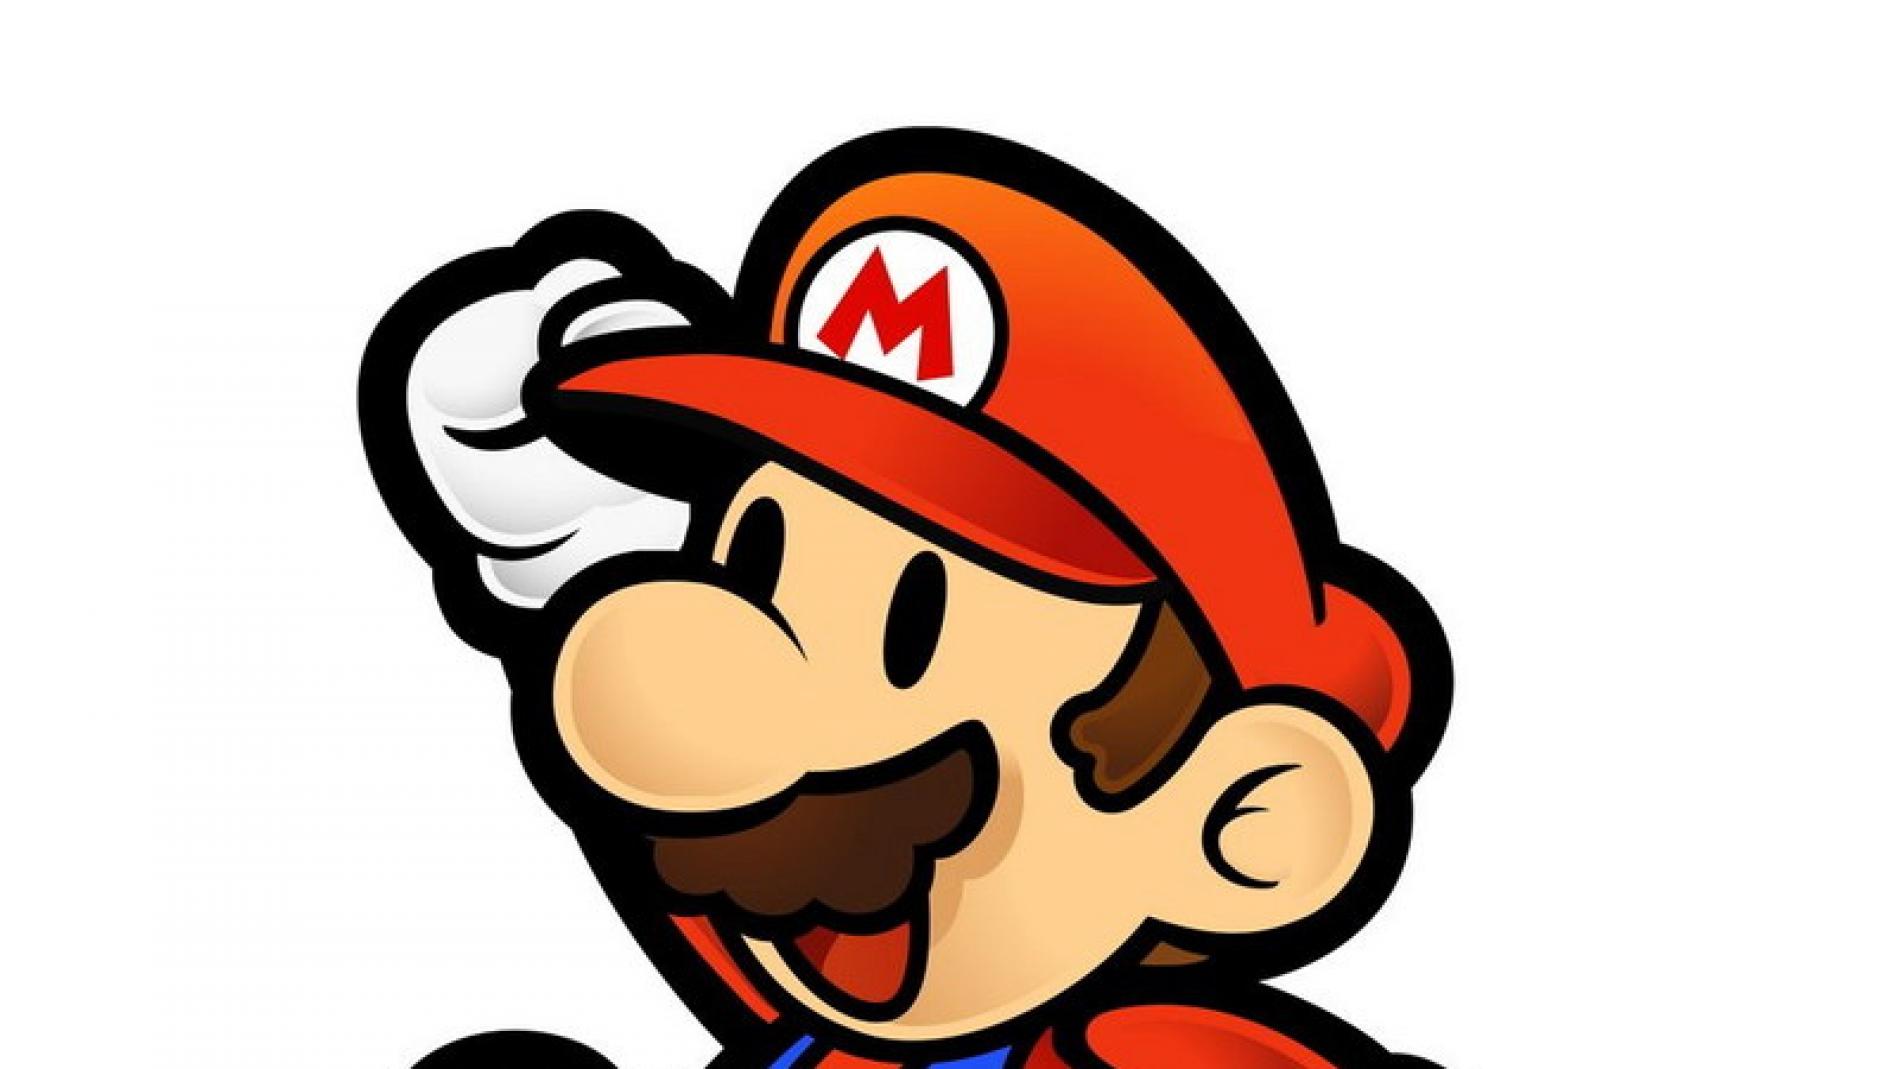 Super Mario Bros, uno de los juegos más vendidos, fue creado por